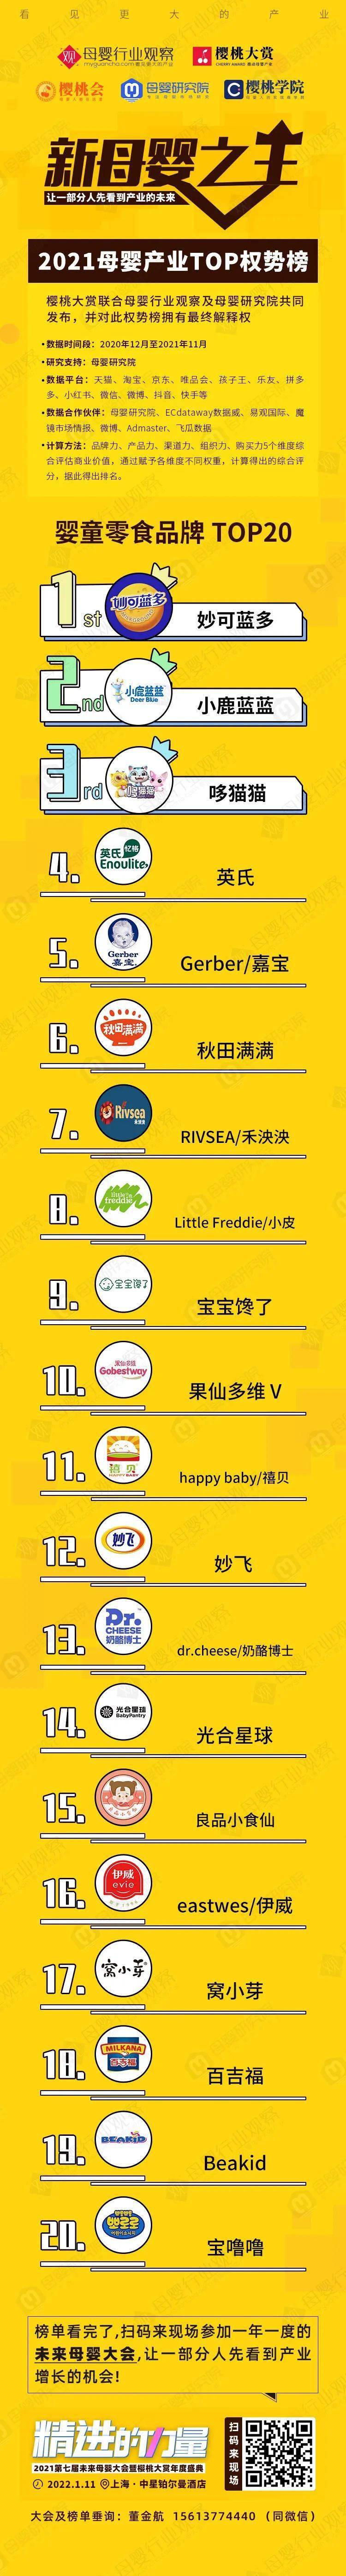 辅食机品牌排行榜_2015年中国婴儿辅食十大品牌排行榜